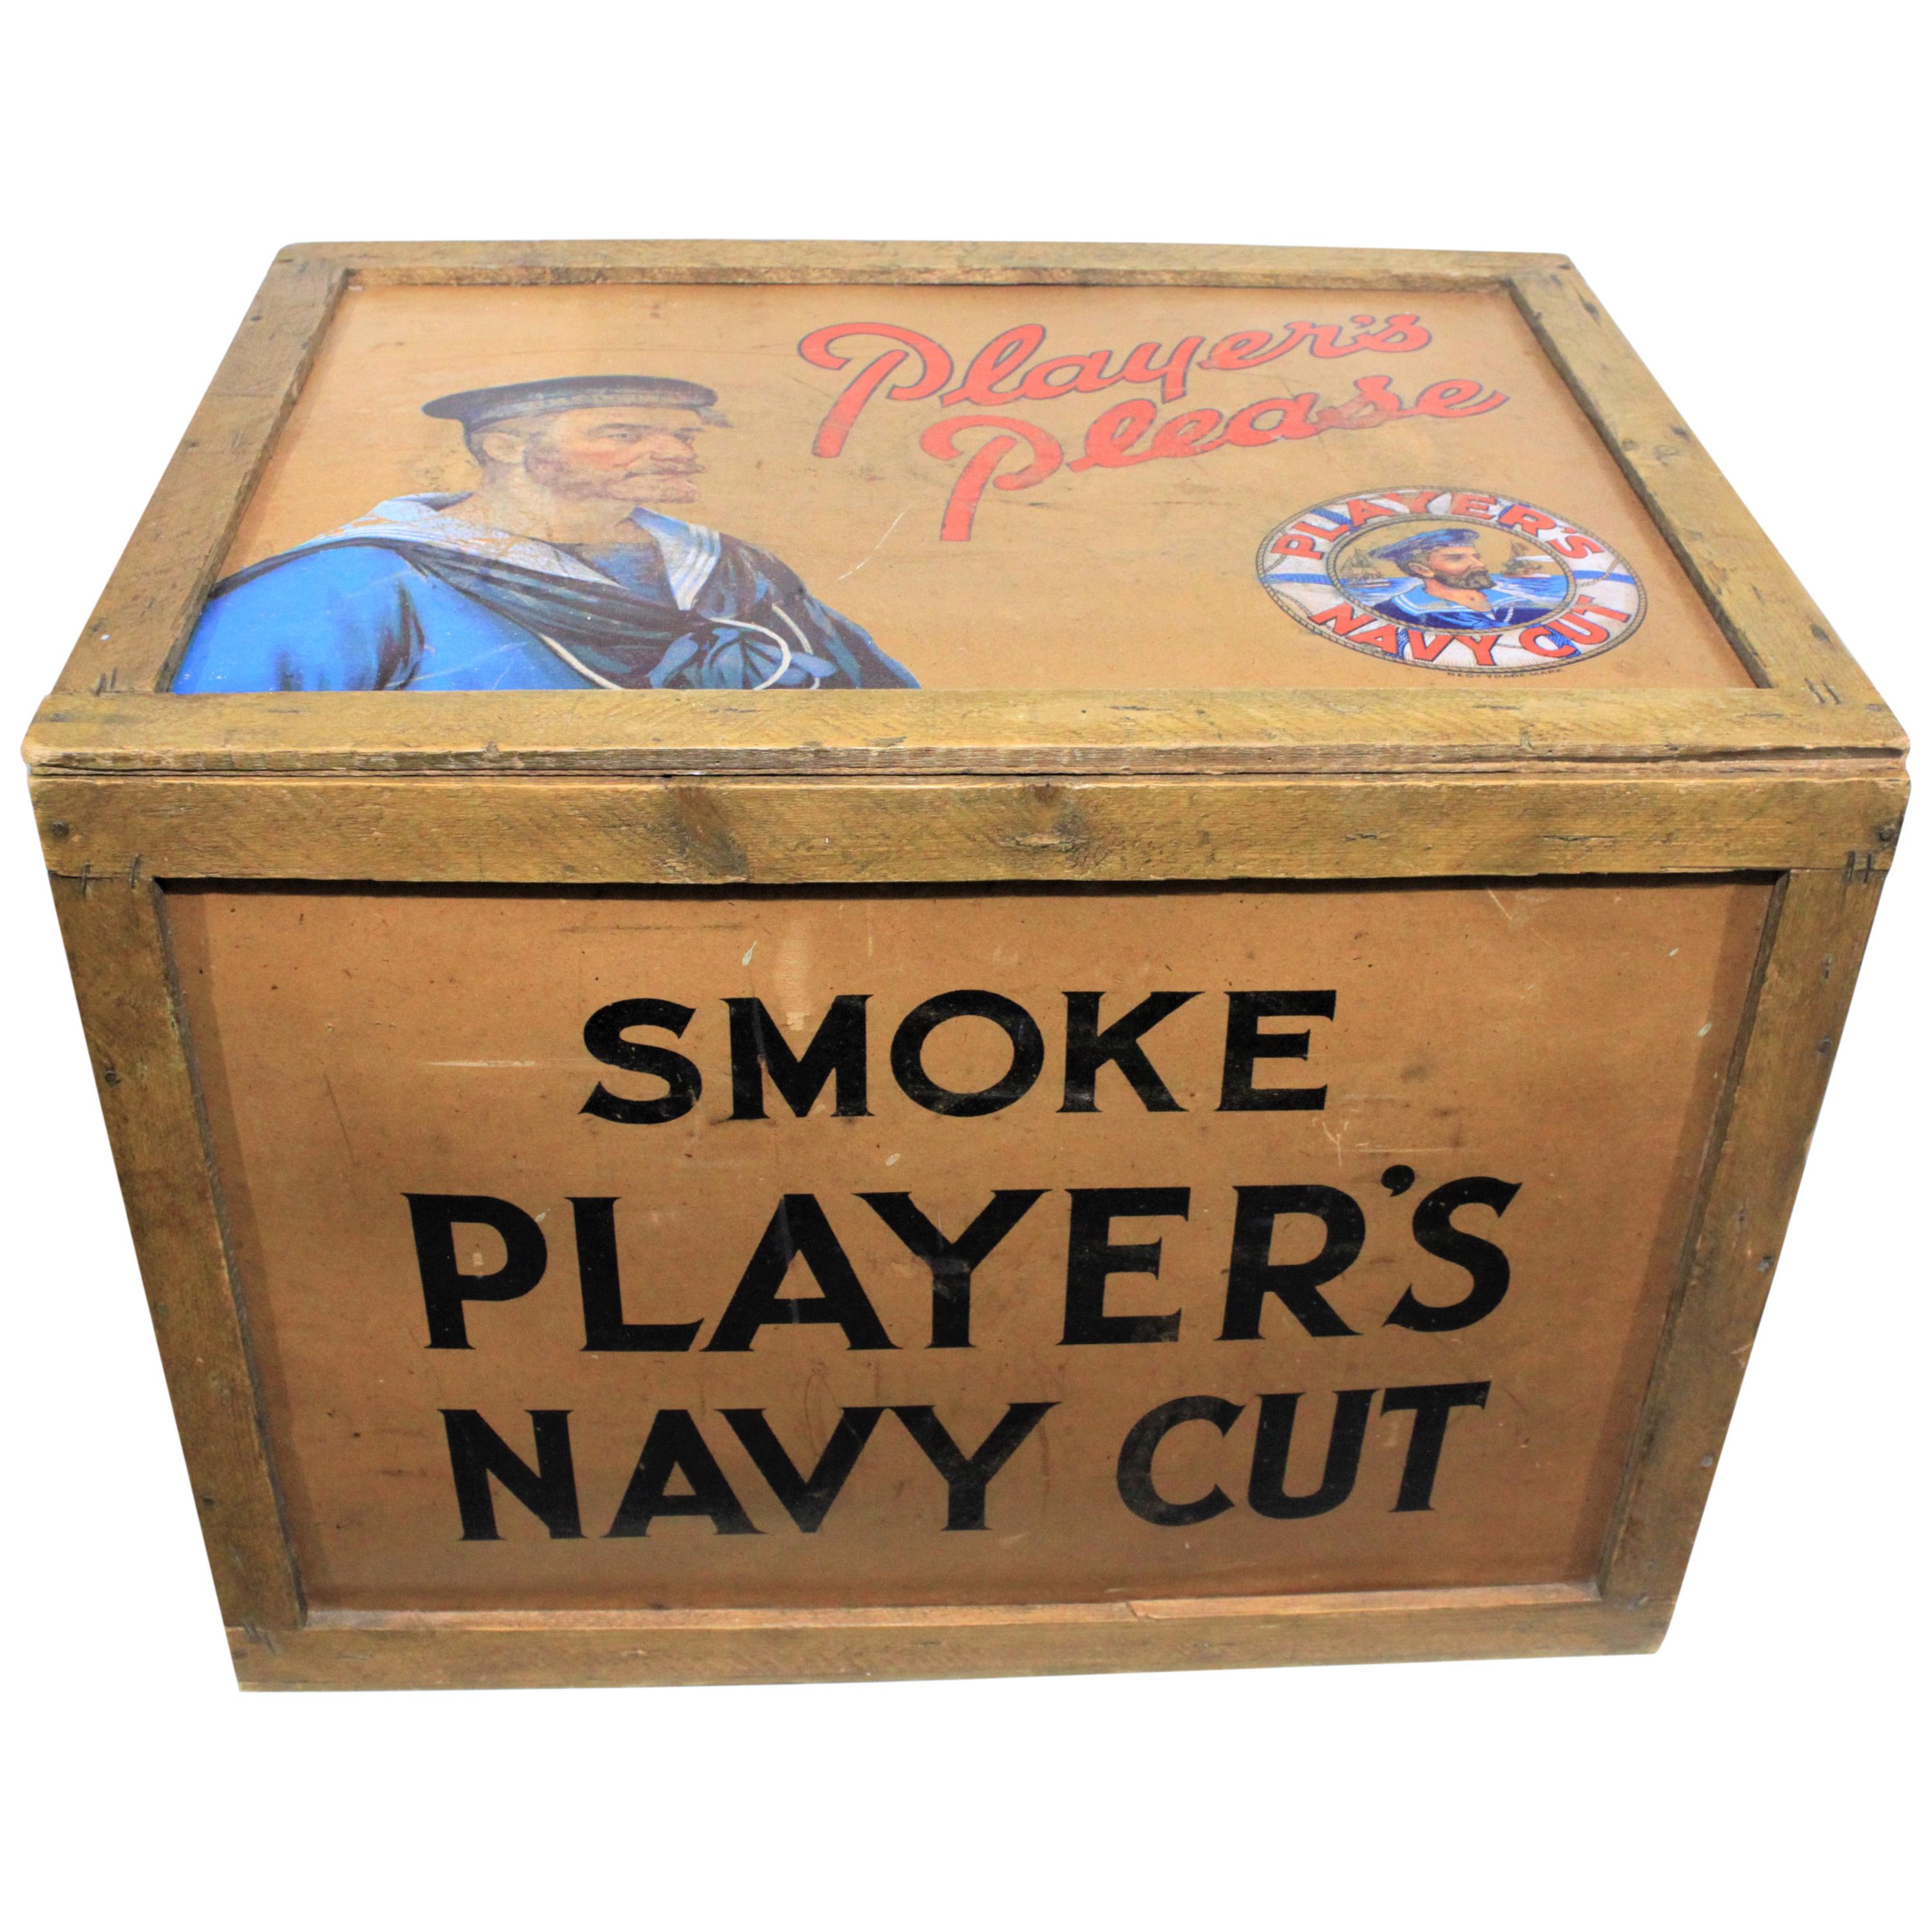 Vintage - John Players - Publicité pour les cigarettes taillées en bleu marine - Crate ou boîte d'expédition